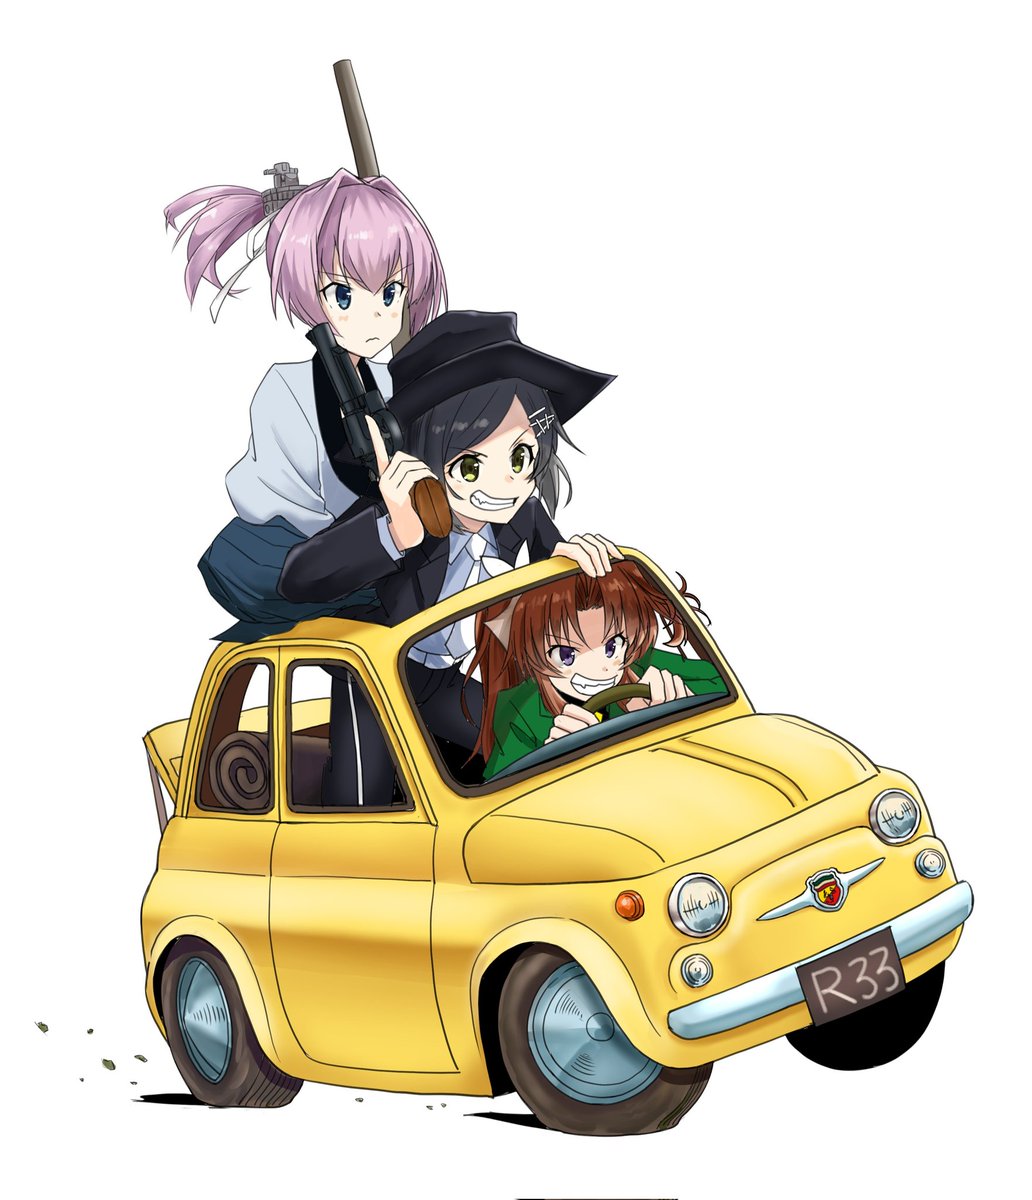 kagerou (kancolle) ,kuroshio (kancolle) ,shiranui (kancolle) multiple girls gun weapon motor vehicle car 3girls ground vehicle  illustration images